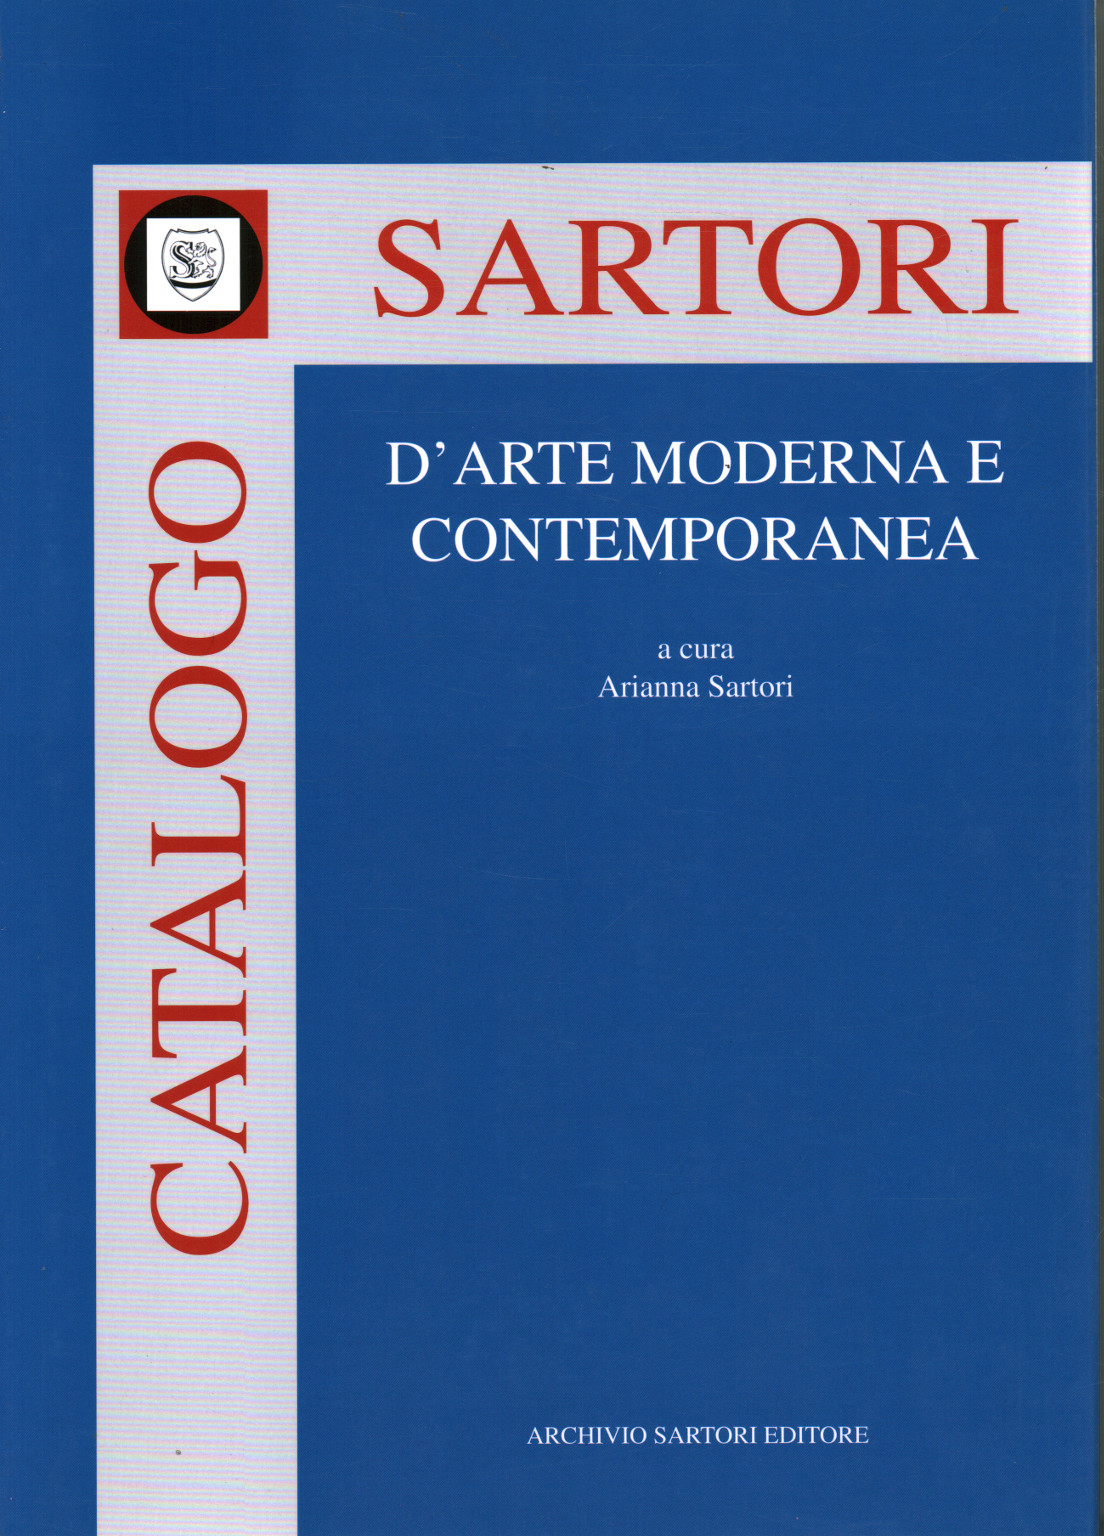 Catalogo Sartori d arte moderna e contemporanea, s.a.